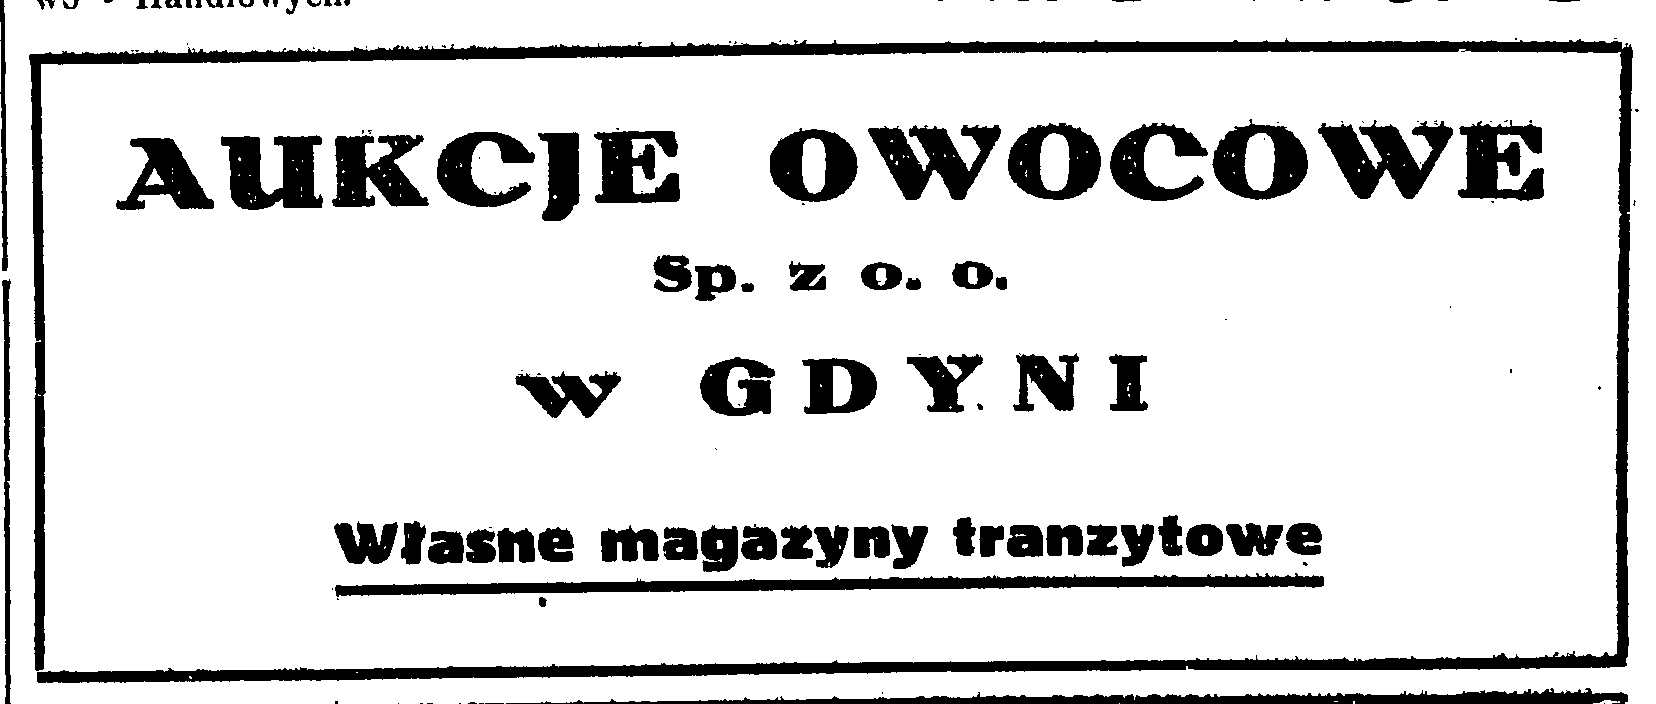 Aukcje owocowe w Gdyni Sp. z o. o. Własne magazyny tranzytowe